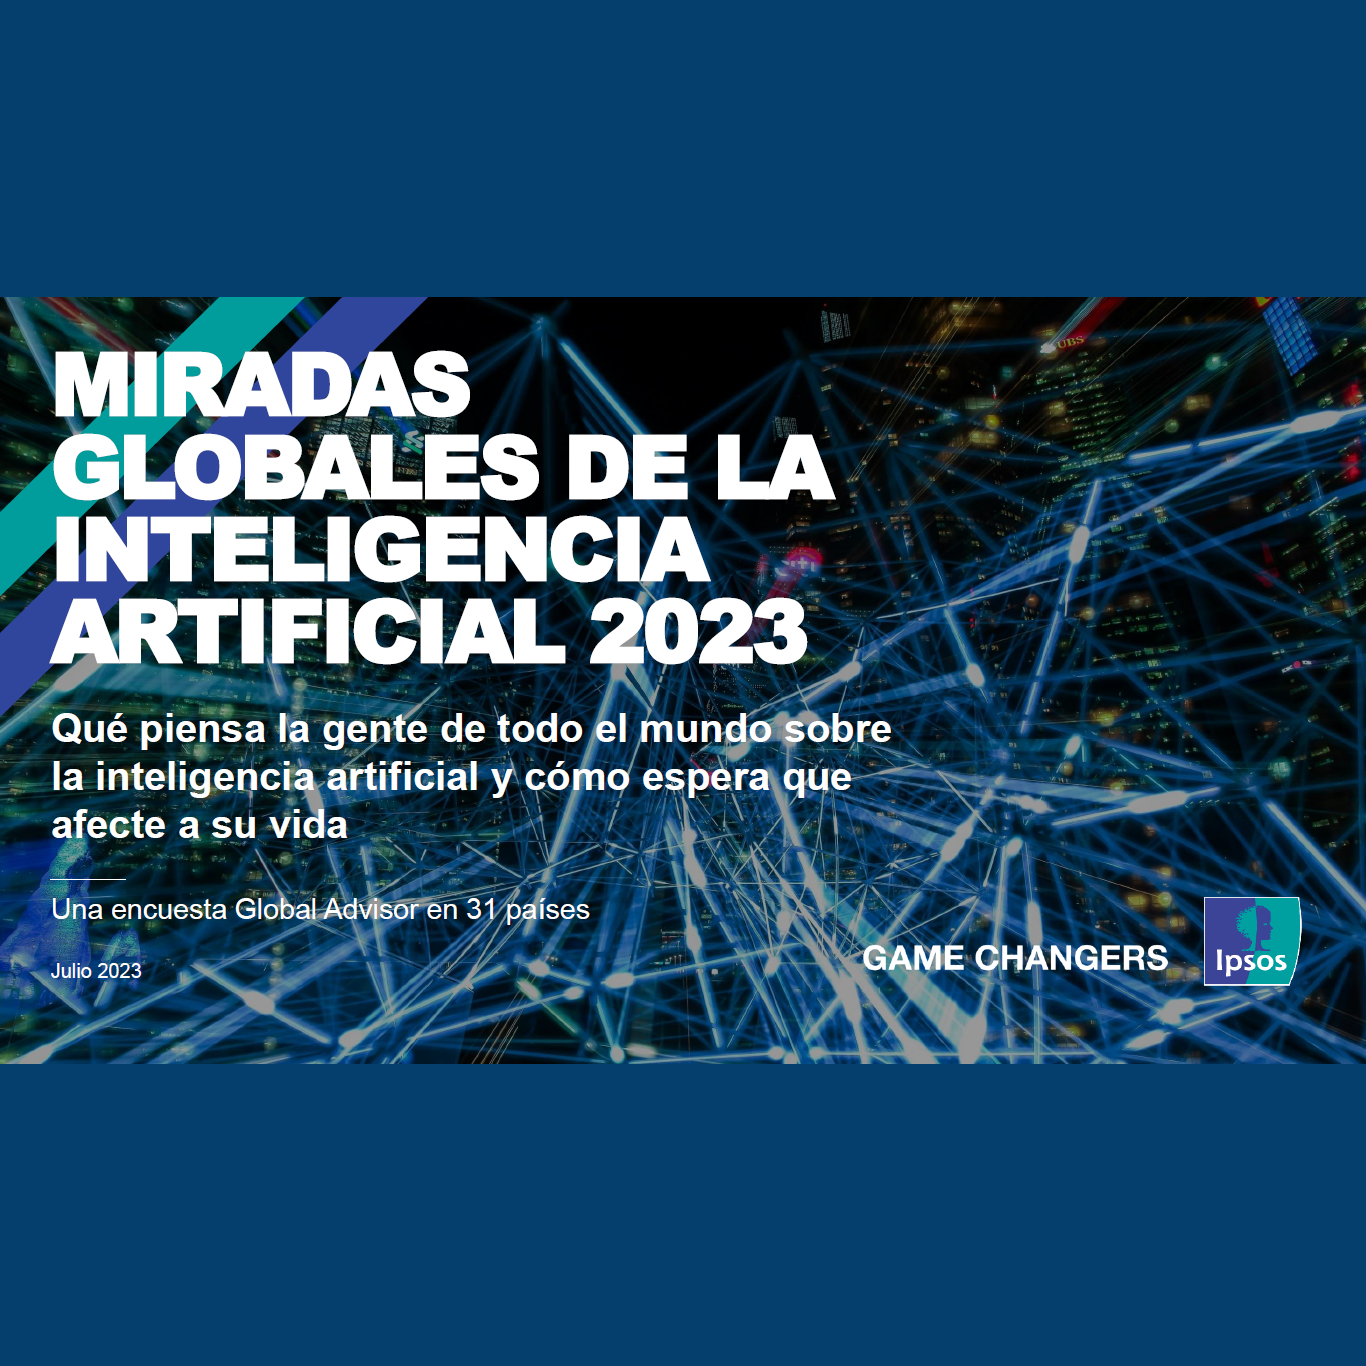 Miradas Globales de la Inteligencia Artificial 2023